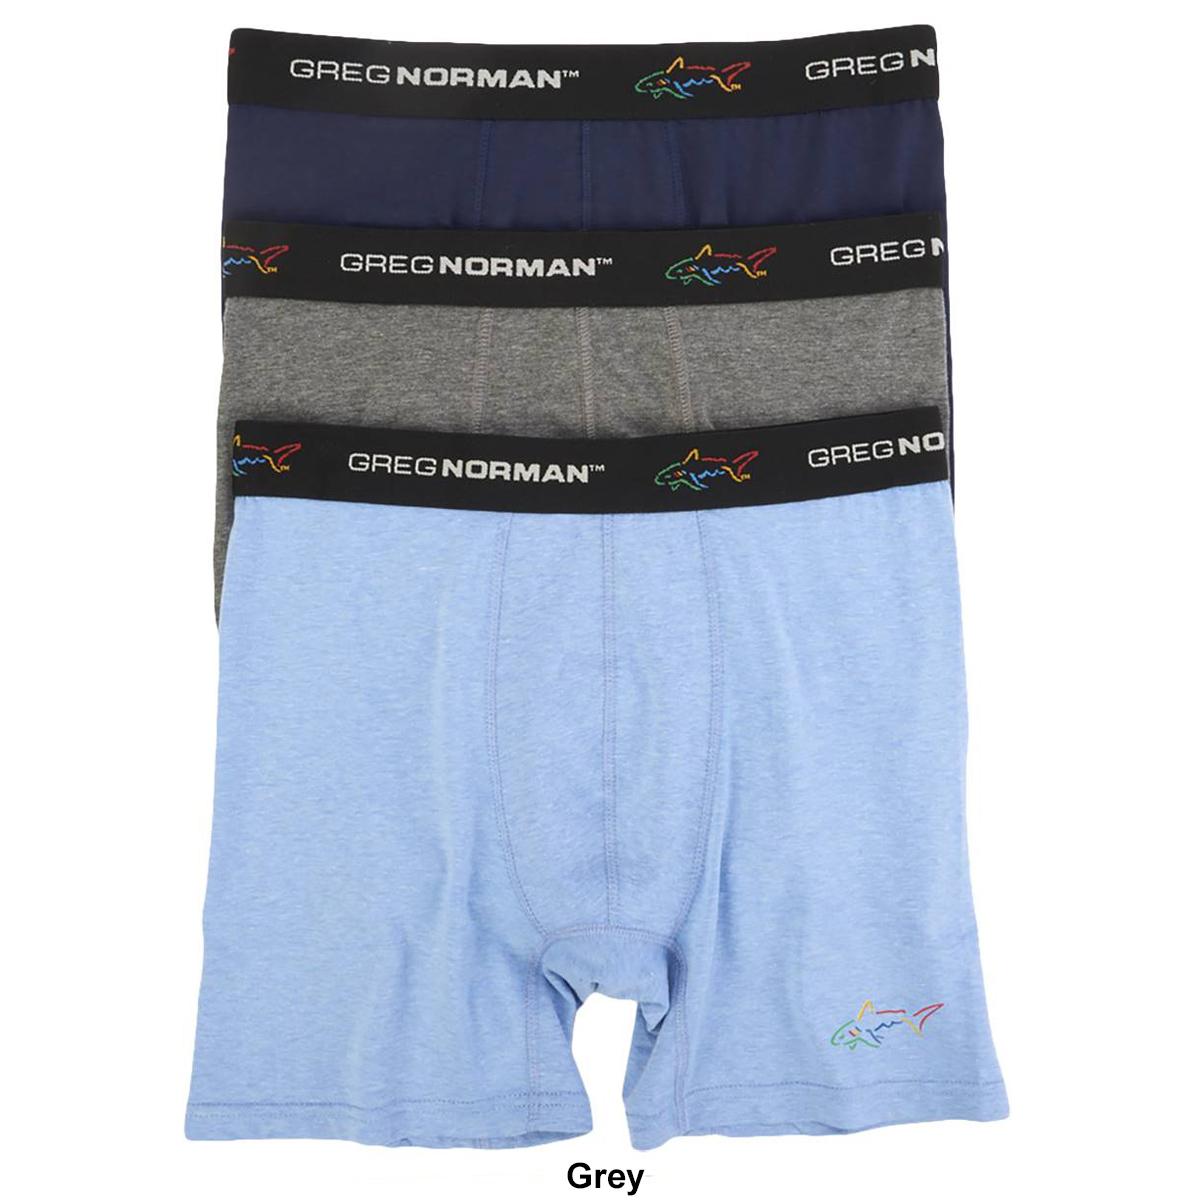 Mens Greg Norman 3pk. Cotton Spandex Underwear